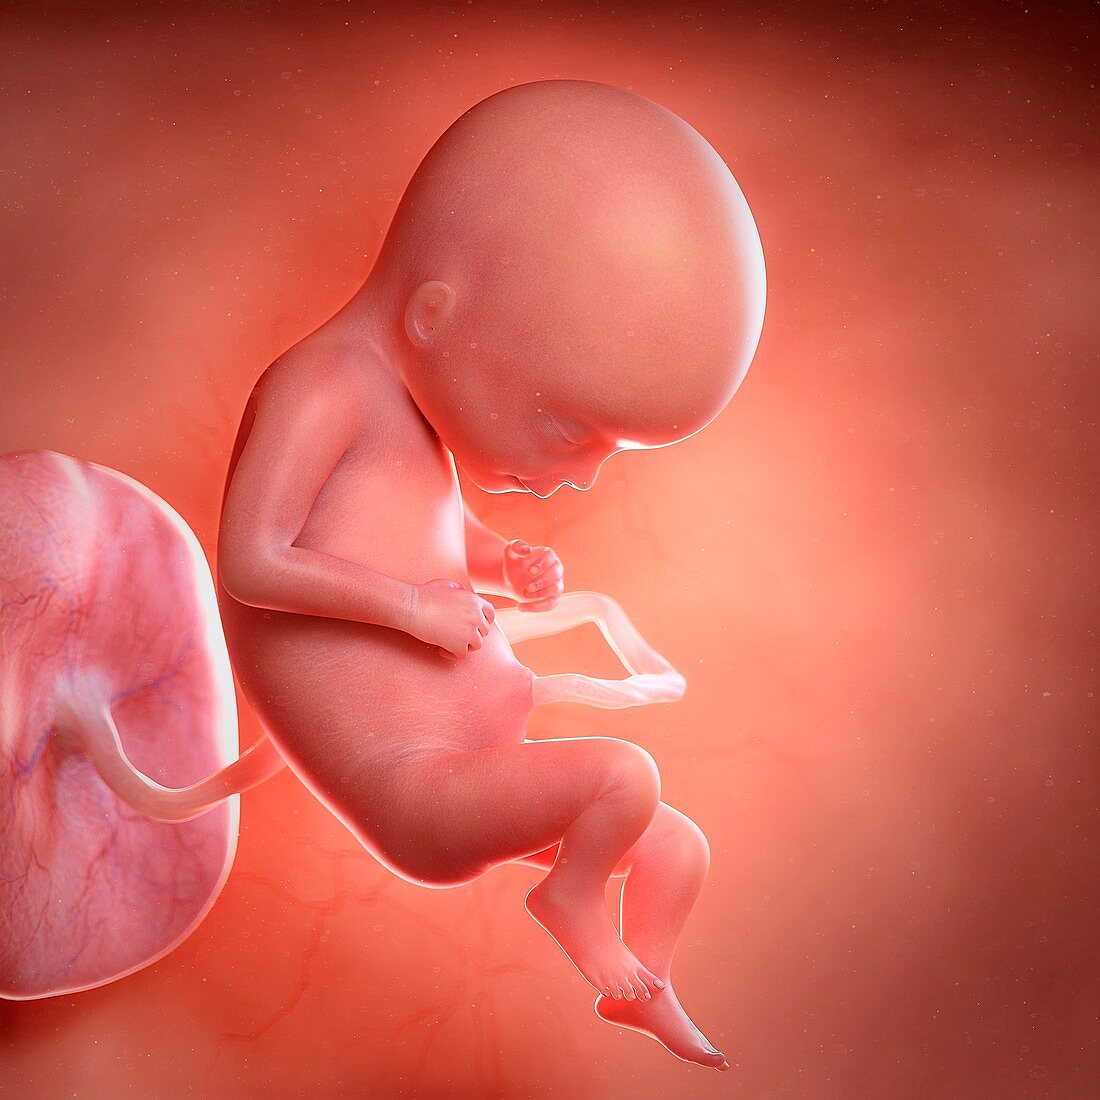 Human foetus age 17 weeks, illustration